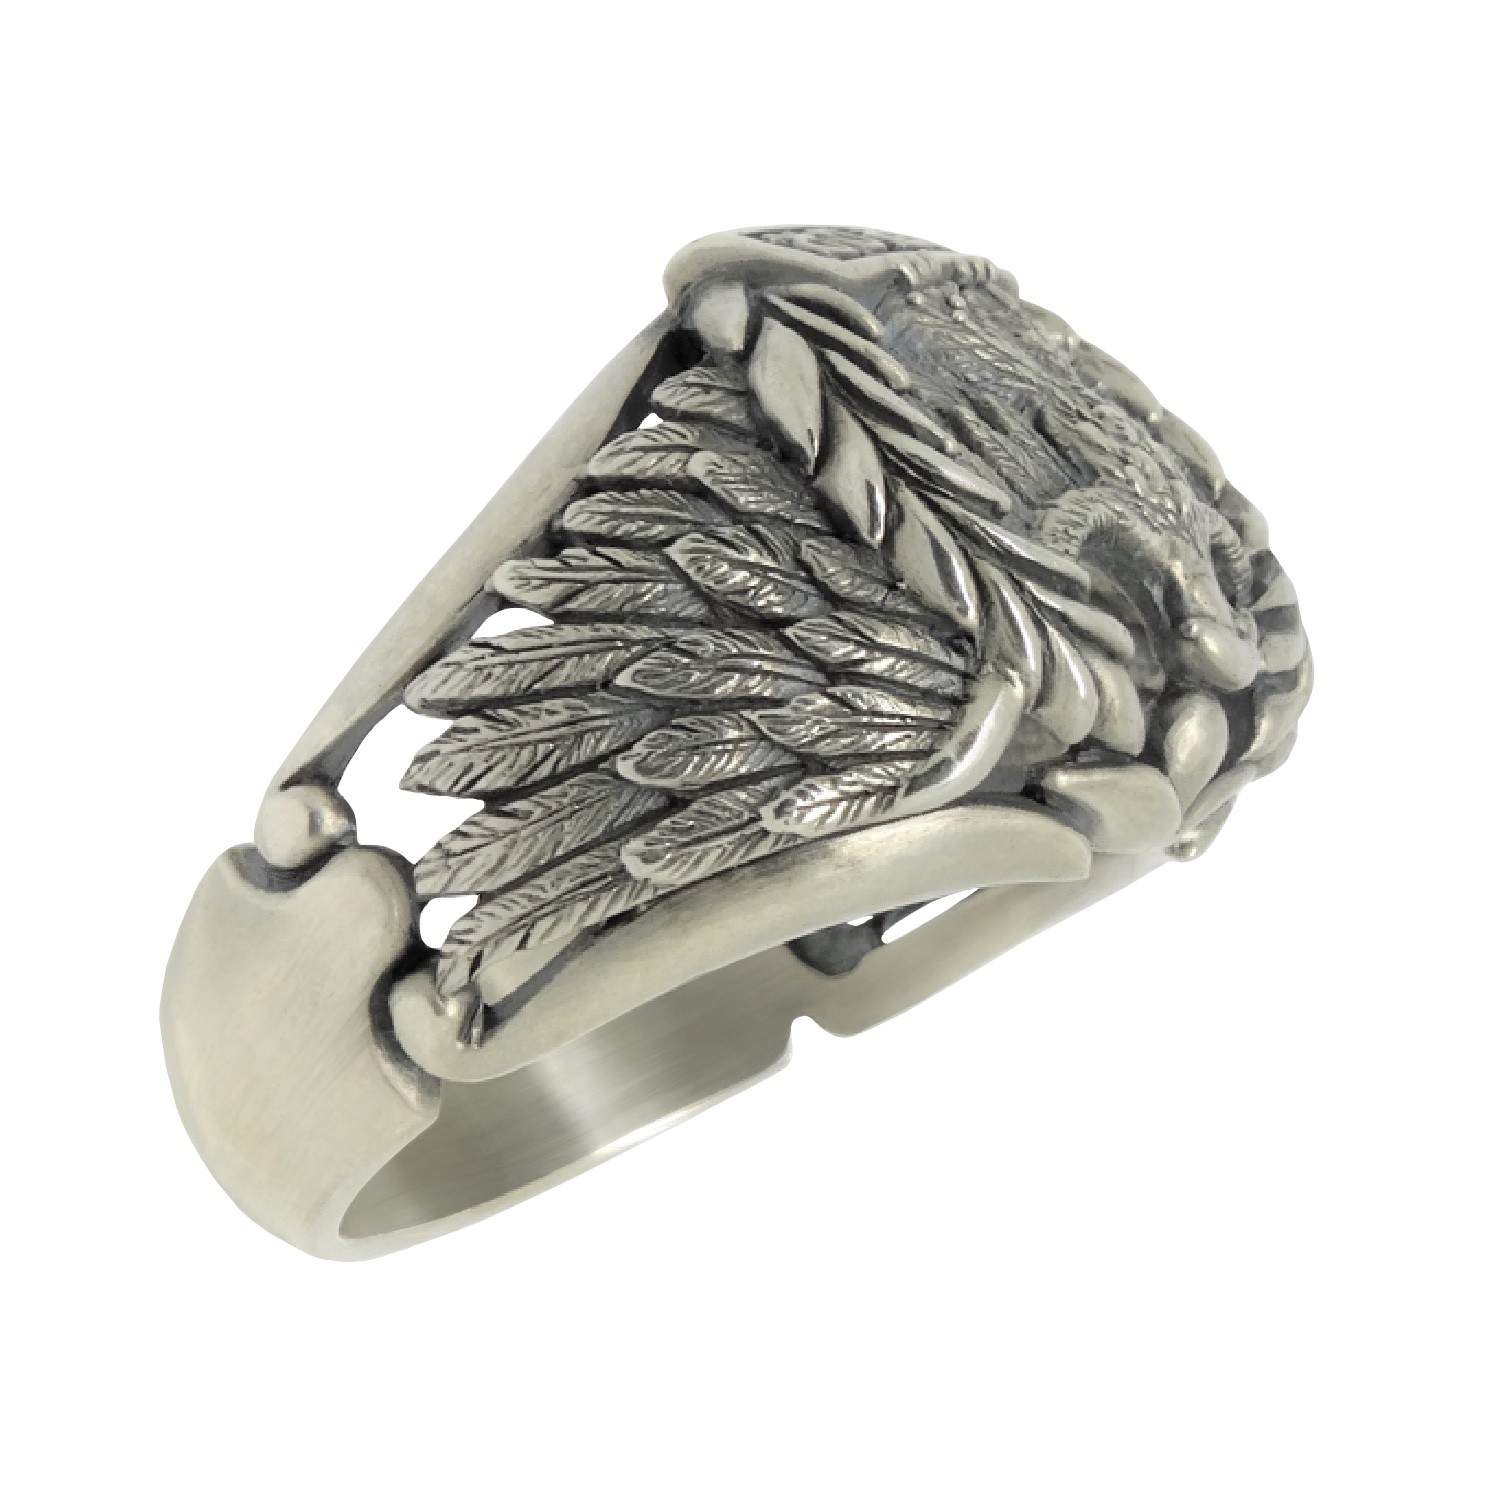 Römischer Adler Roman eagle SPQR Ring Silber 925 Biker Gothic 